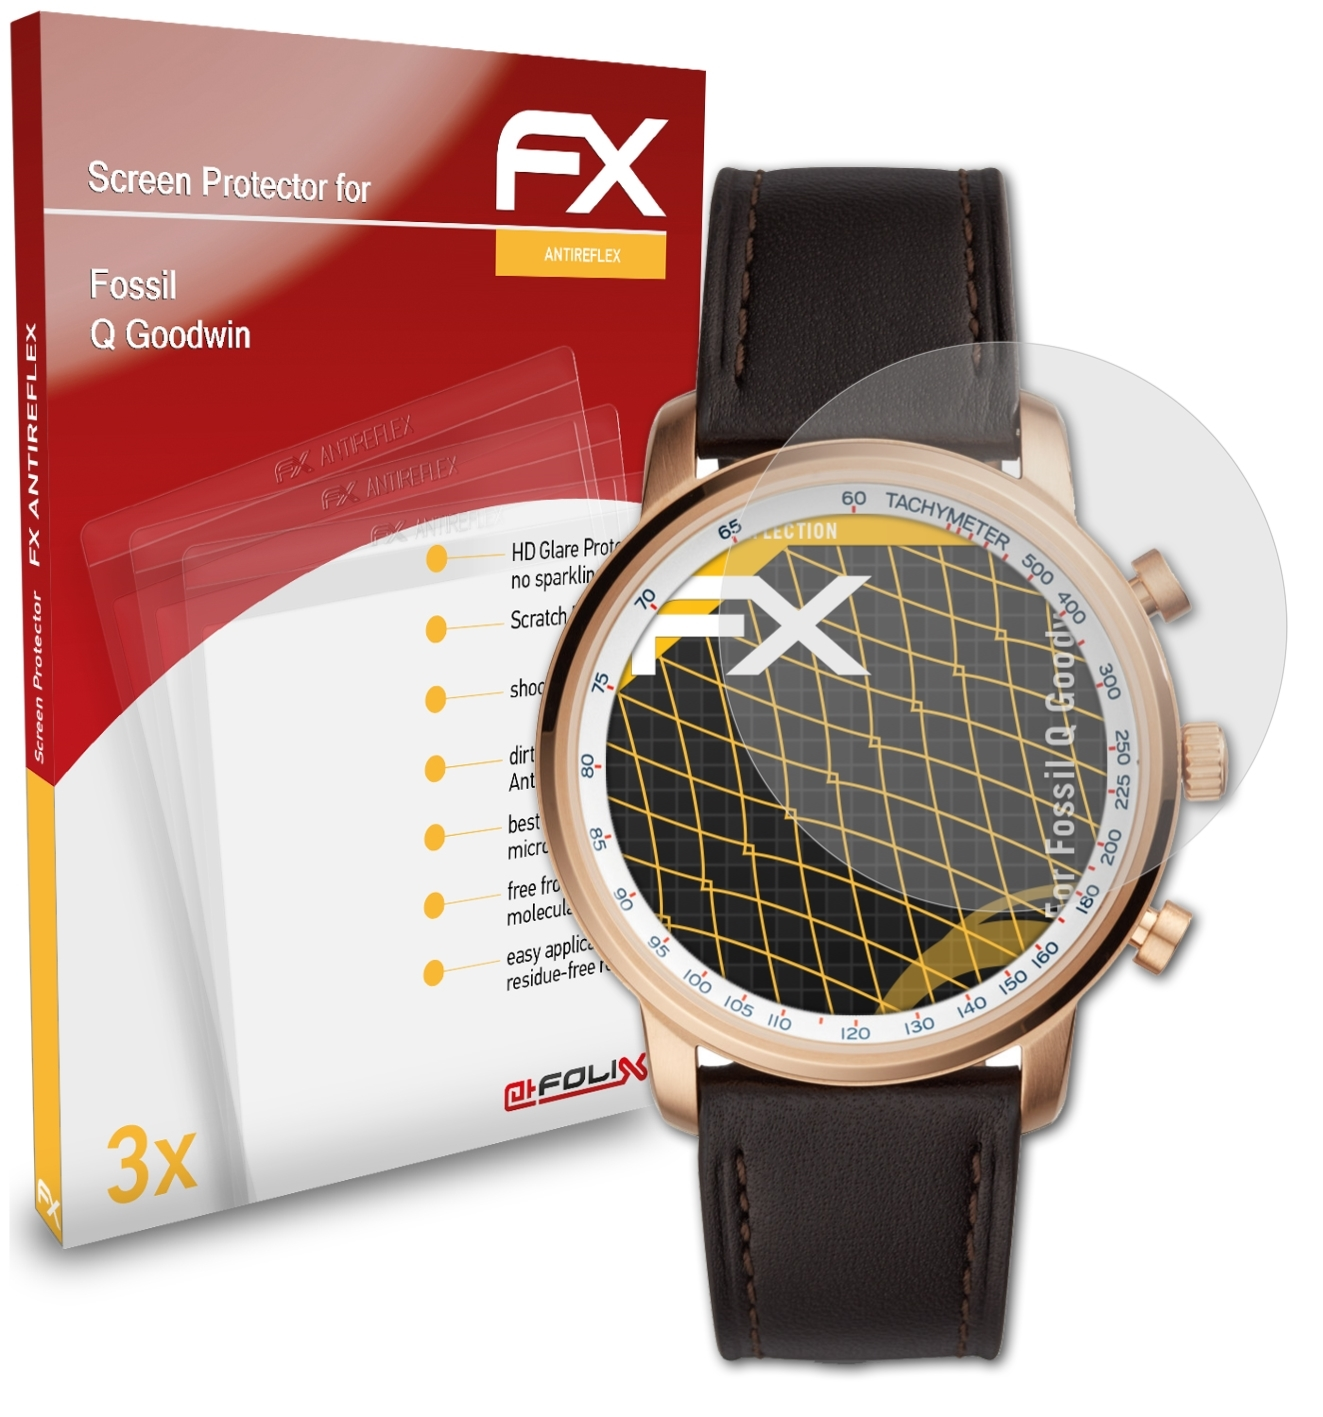 ATFOLIX 3x Goodwin) Fossil Displayschutz(für FX-Antireflex Q